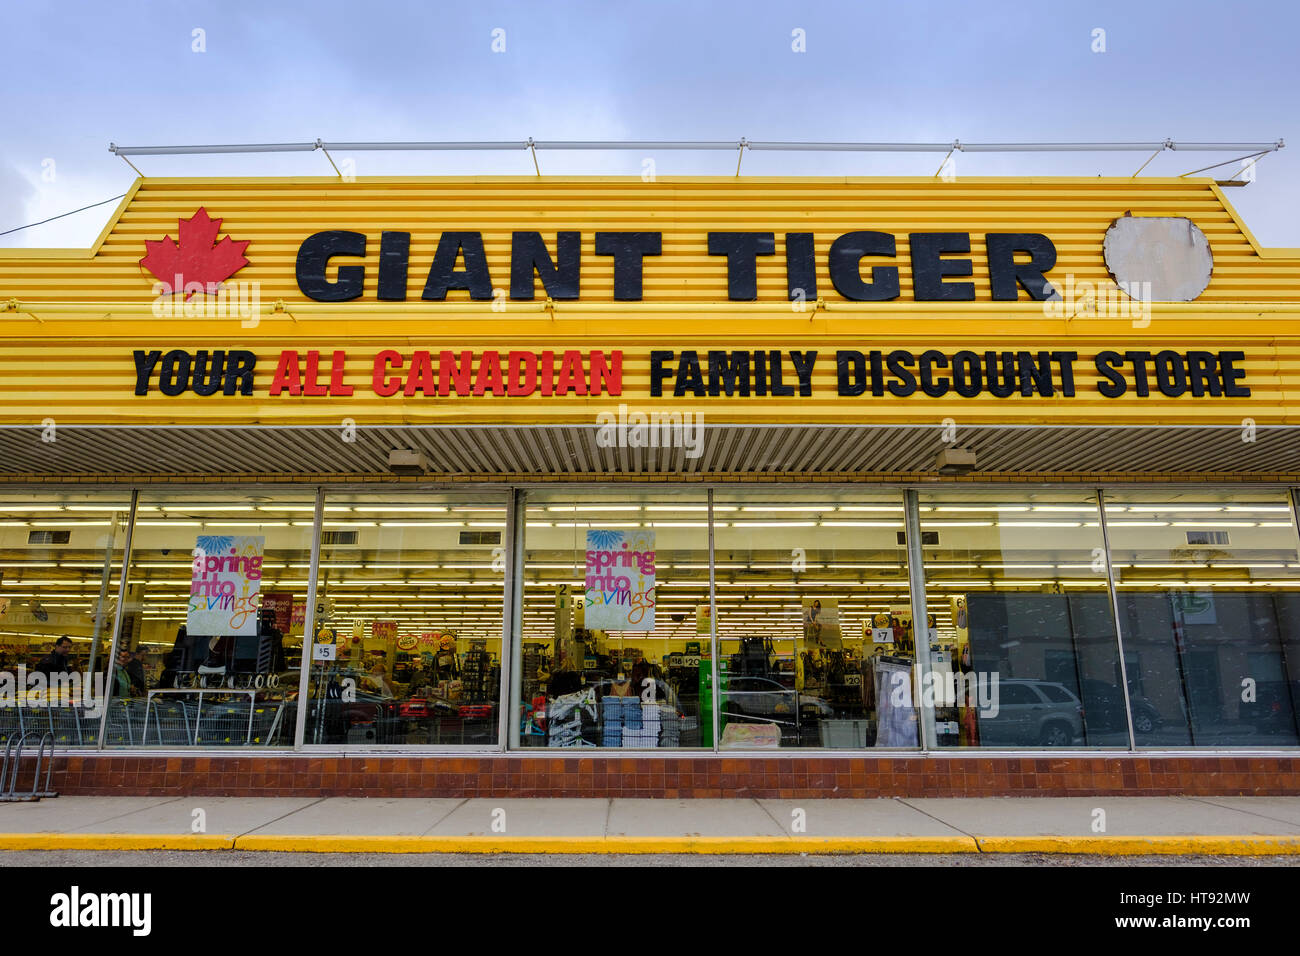 Averses de l'automne sur la façade de la magasin Tigre Géant, une chaîne de magasins de détail au Canada, à St Thomas, Ontario, montrant le nom du magasin et de promotion s Banque D'Images